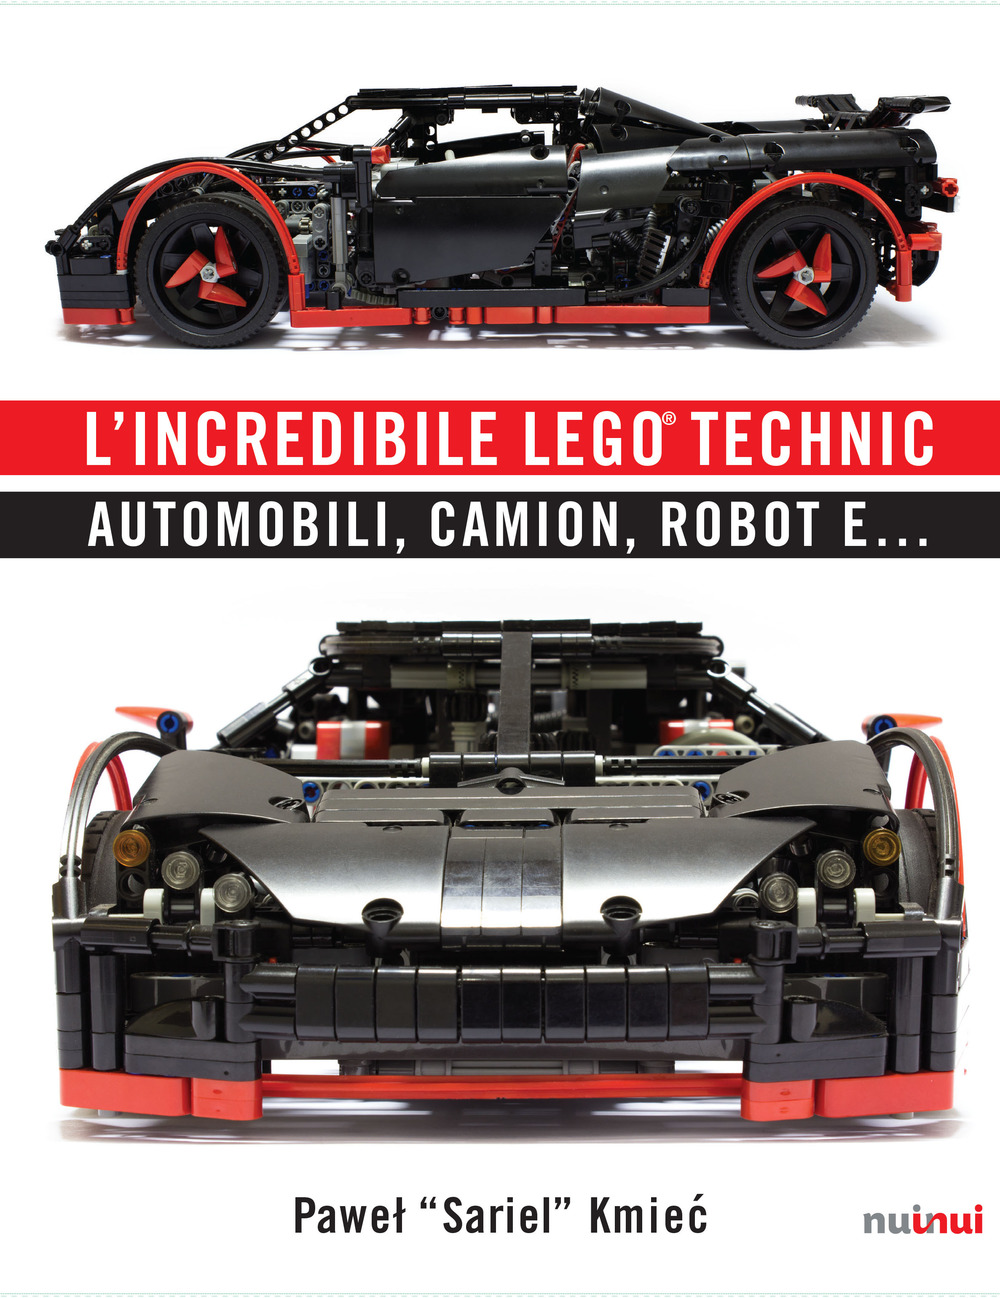 L'incredibile Lego® Technic. Automobili, camion, robot e...